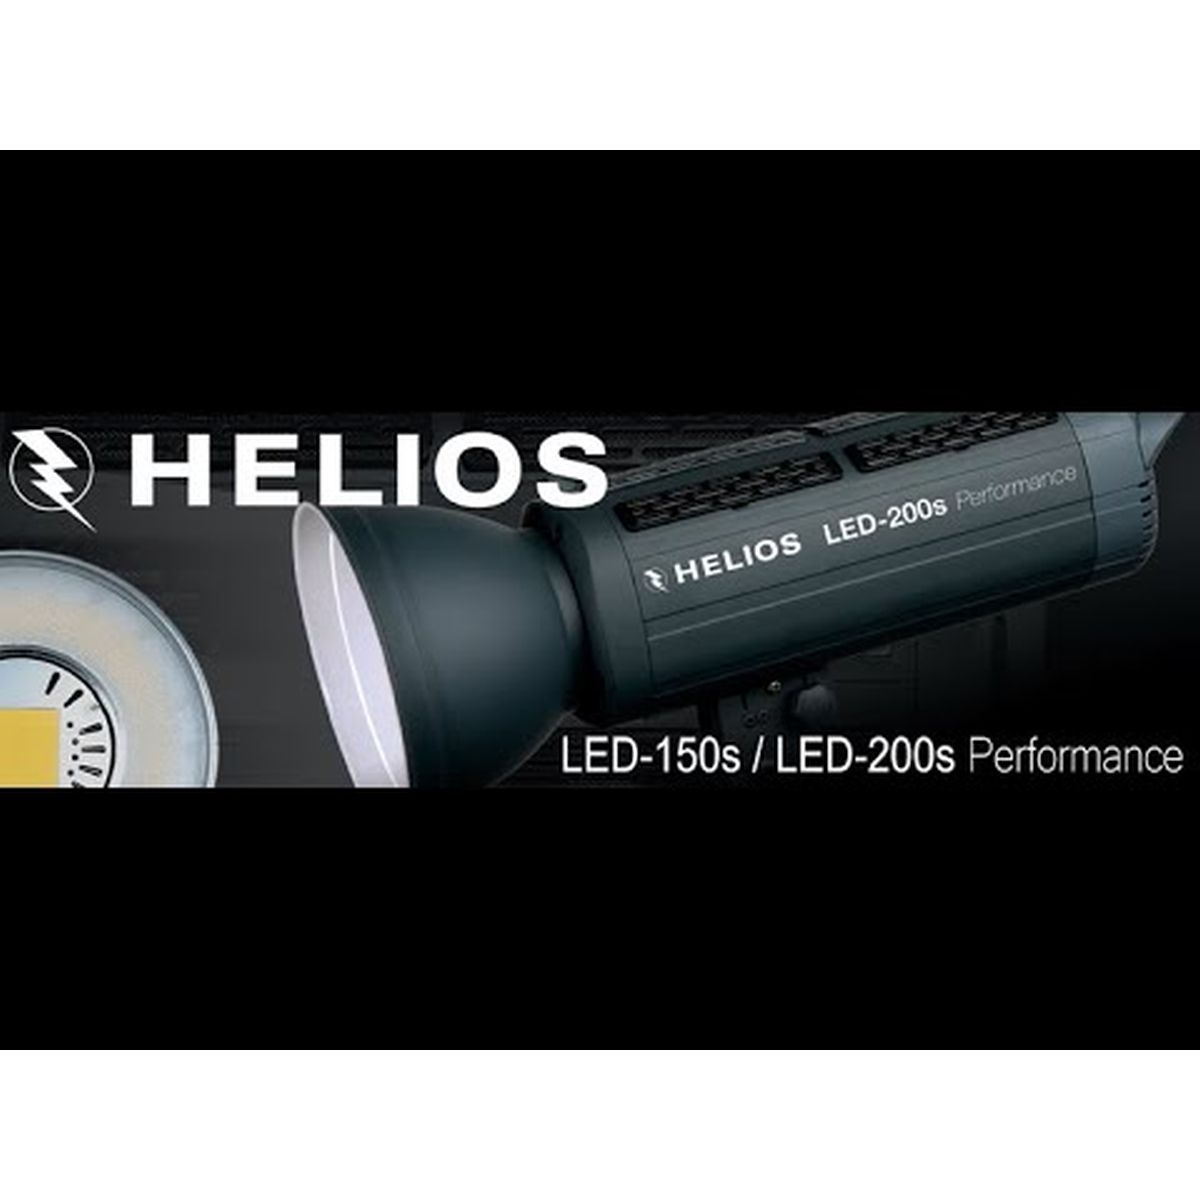 Helios LED-150s Performance Studioleuchte 2er-Set